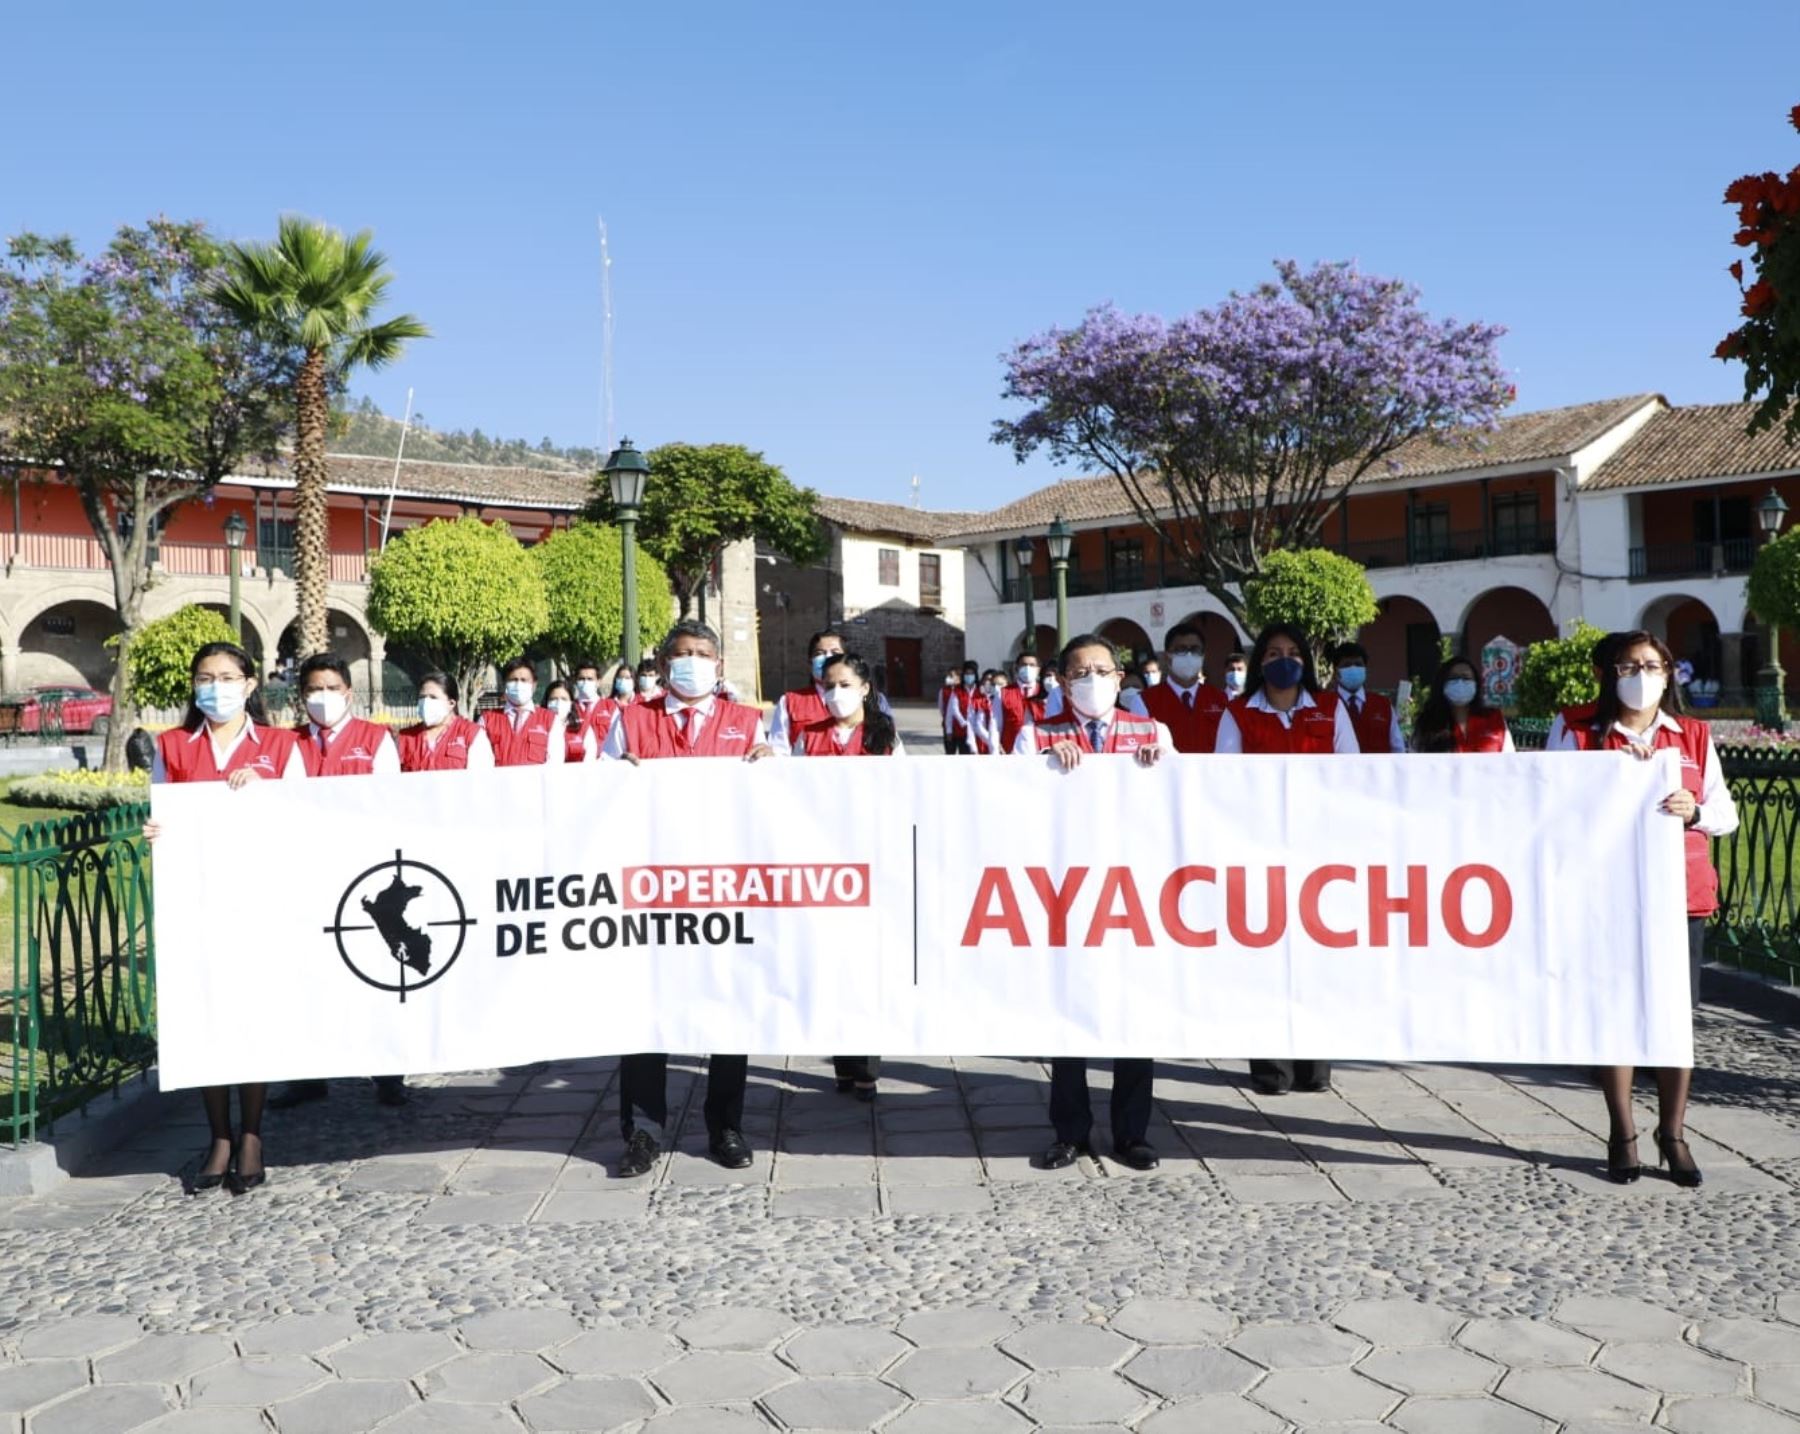 La Contraloría inició hoy un megaoperativo de control en Ayacucho que tiene como meta examinar la ejecución de S/ 524 millones en diversas entidades públicas que operan en esta región.